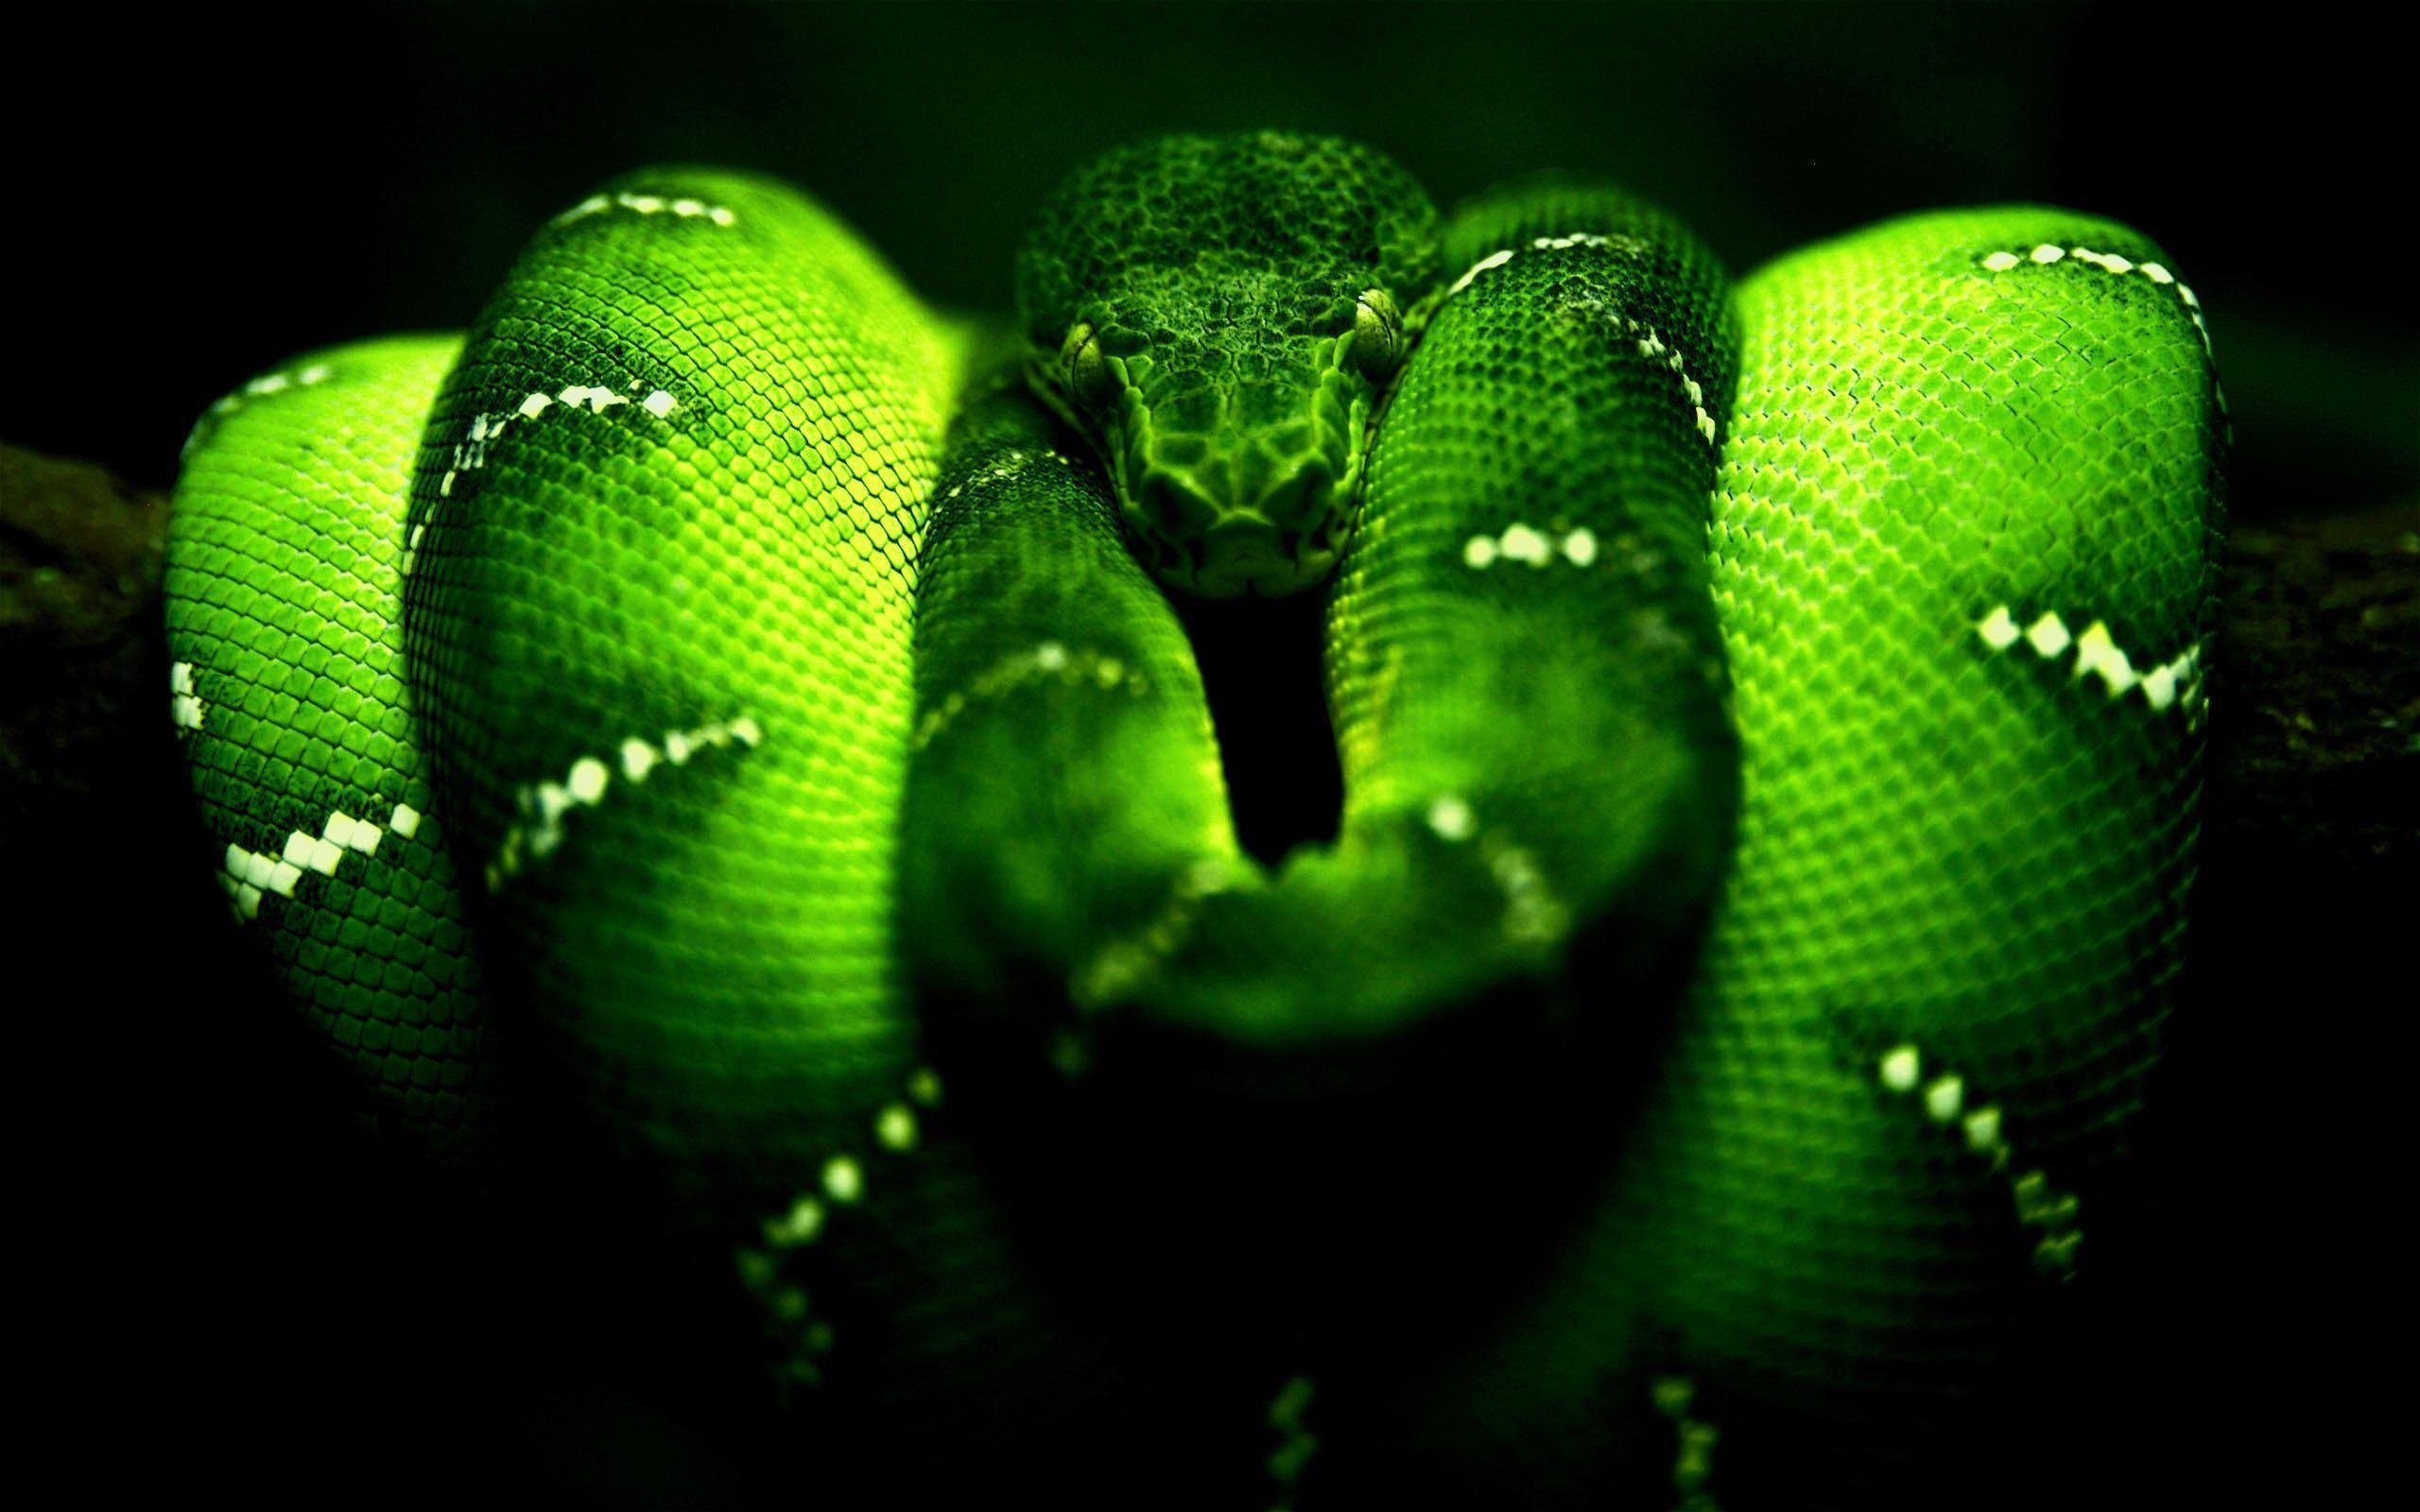 Snakes Full HD Image. Free Art Wallpaper